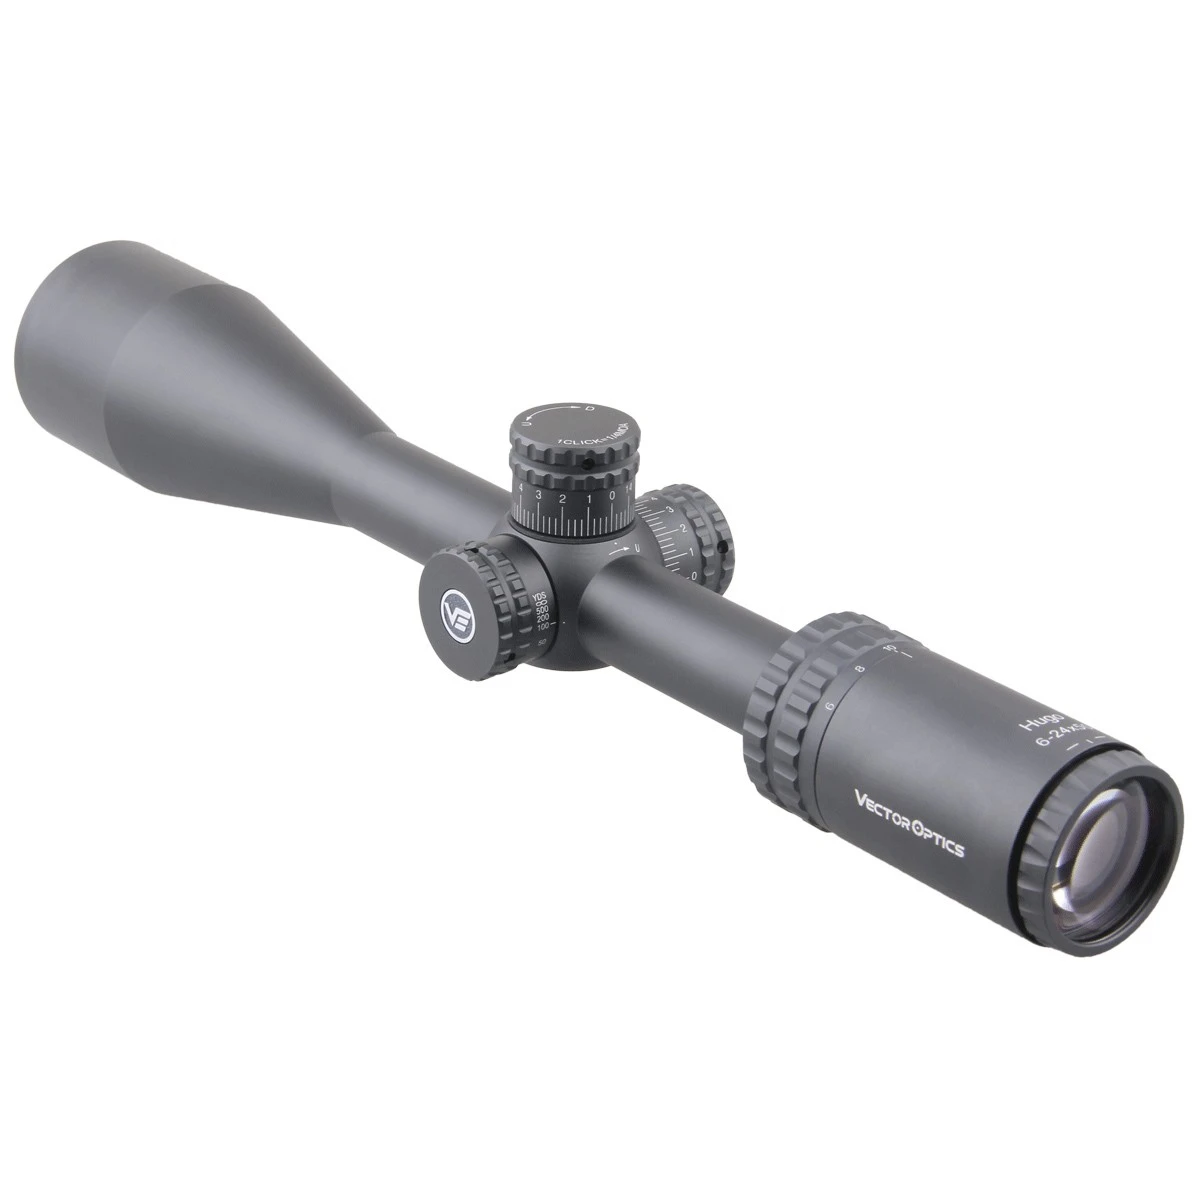 Vector Optics Hugo 6-24x50 Lov Riflescope 1 cm 25.4 mm Optični Puška Področje BDC Reticle Ustreza .22WMR & .308win Šok Dokaz